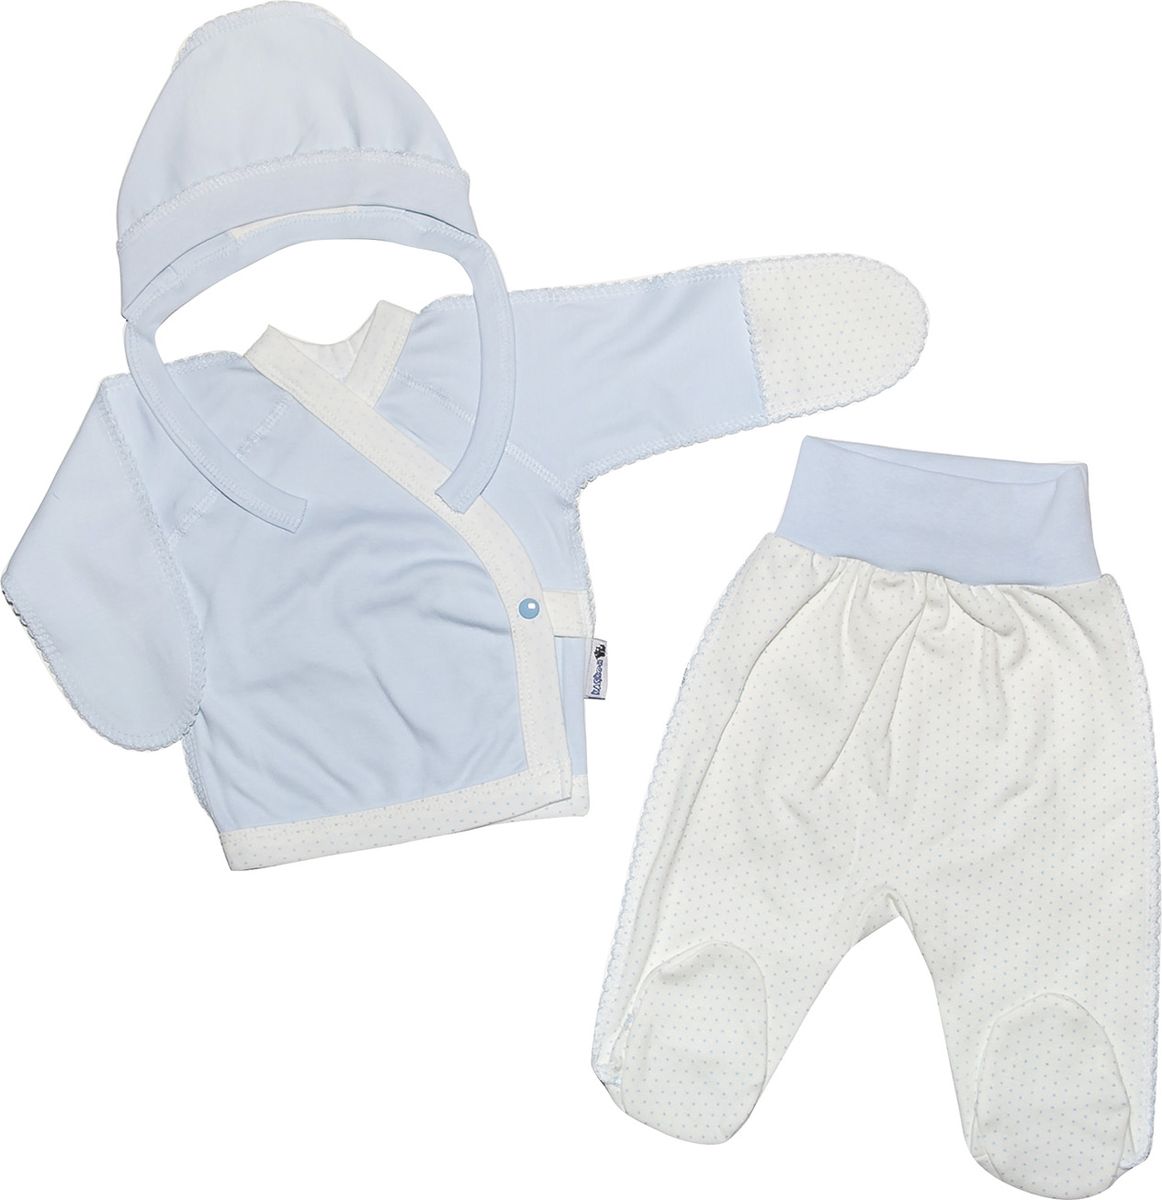 Комплект одежды детский Клякса, цвет: экрю, голубой, 3 предмета. 33с-5182. Размер 50